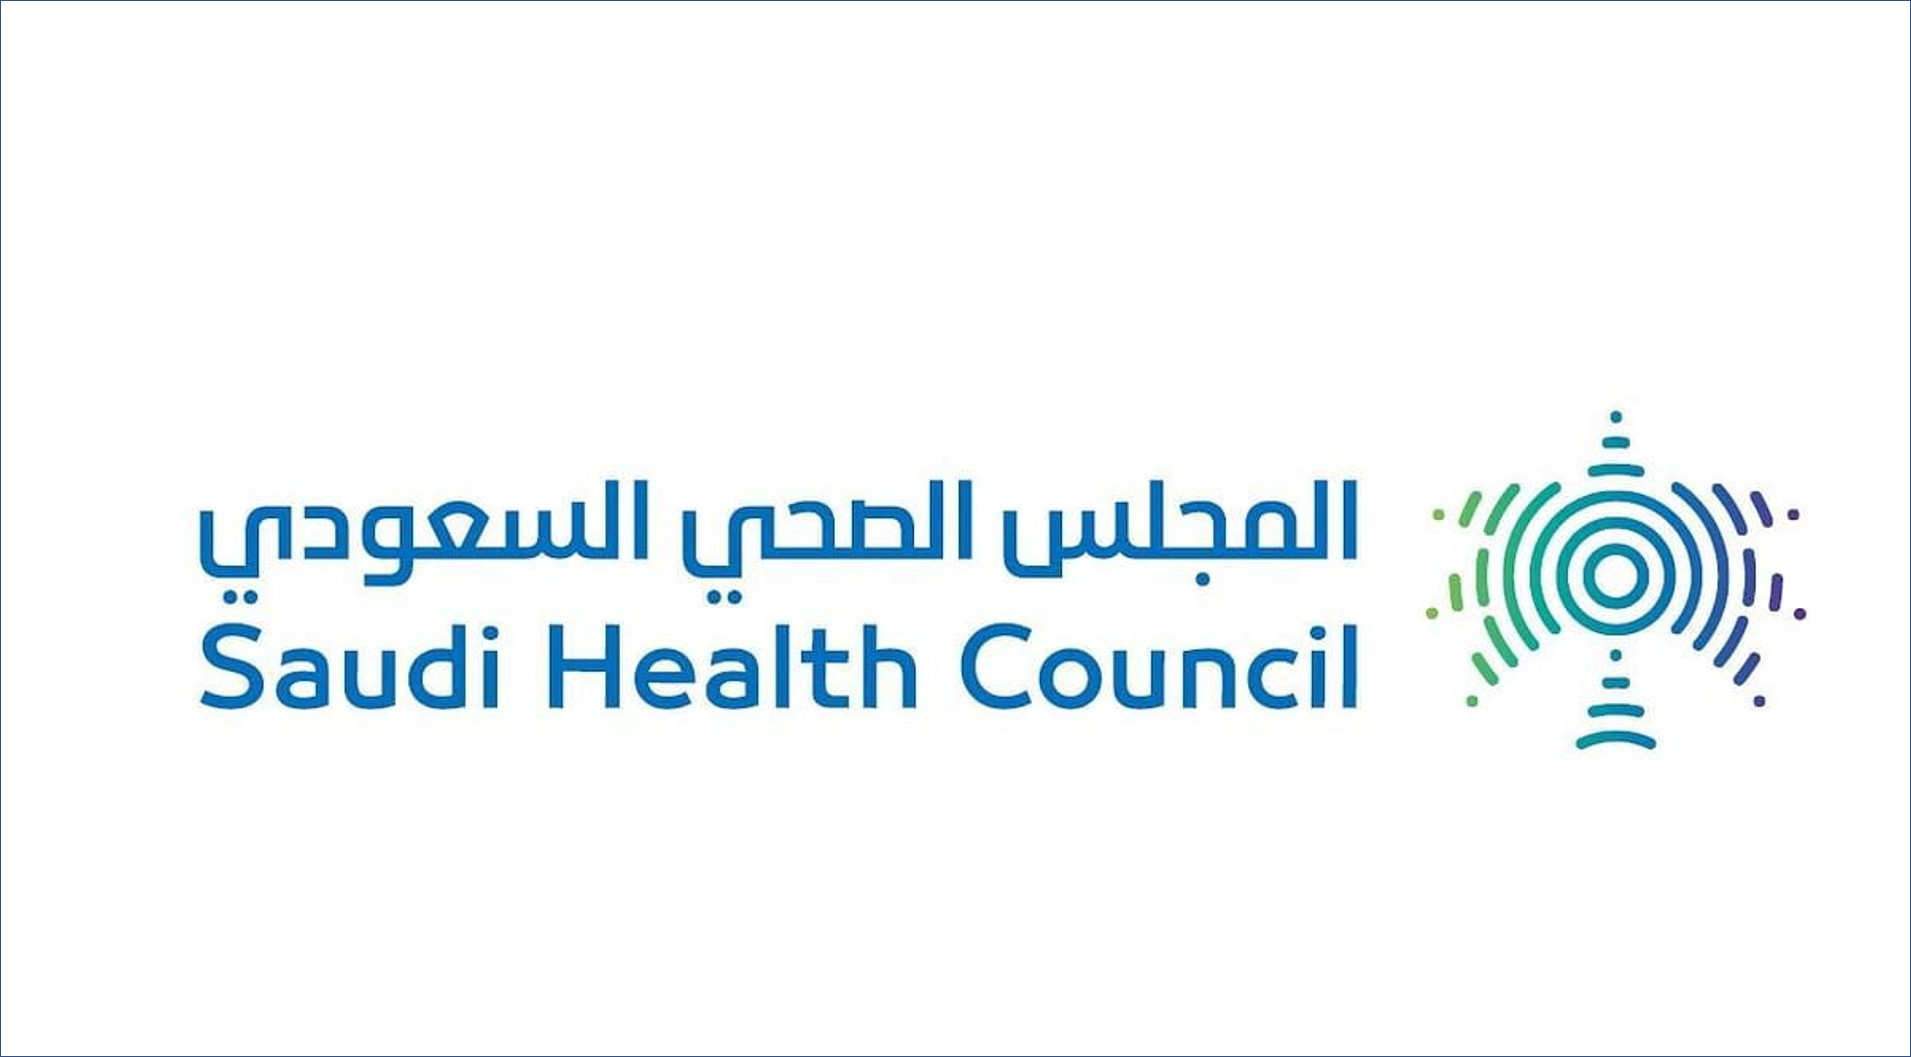 المجلس الصحي السعودي يعلن عن وظائف للرجال والنساء